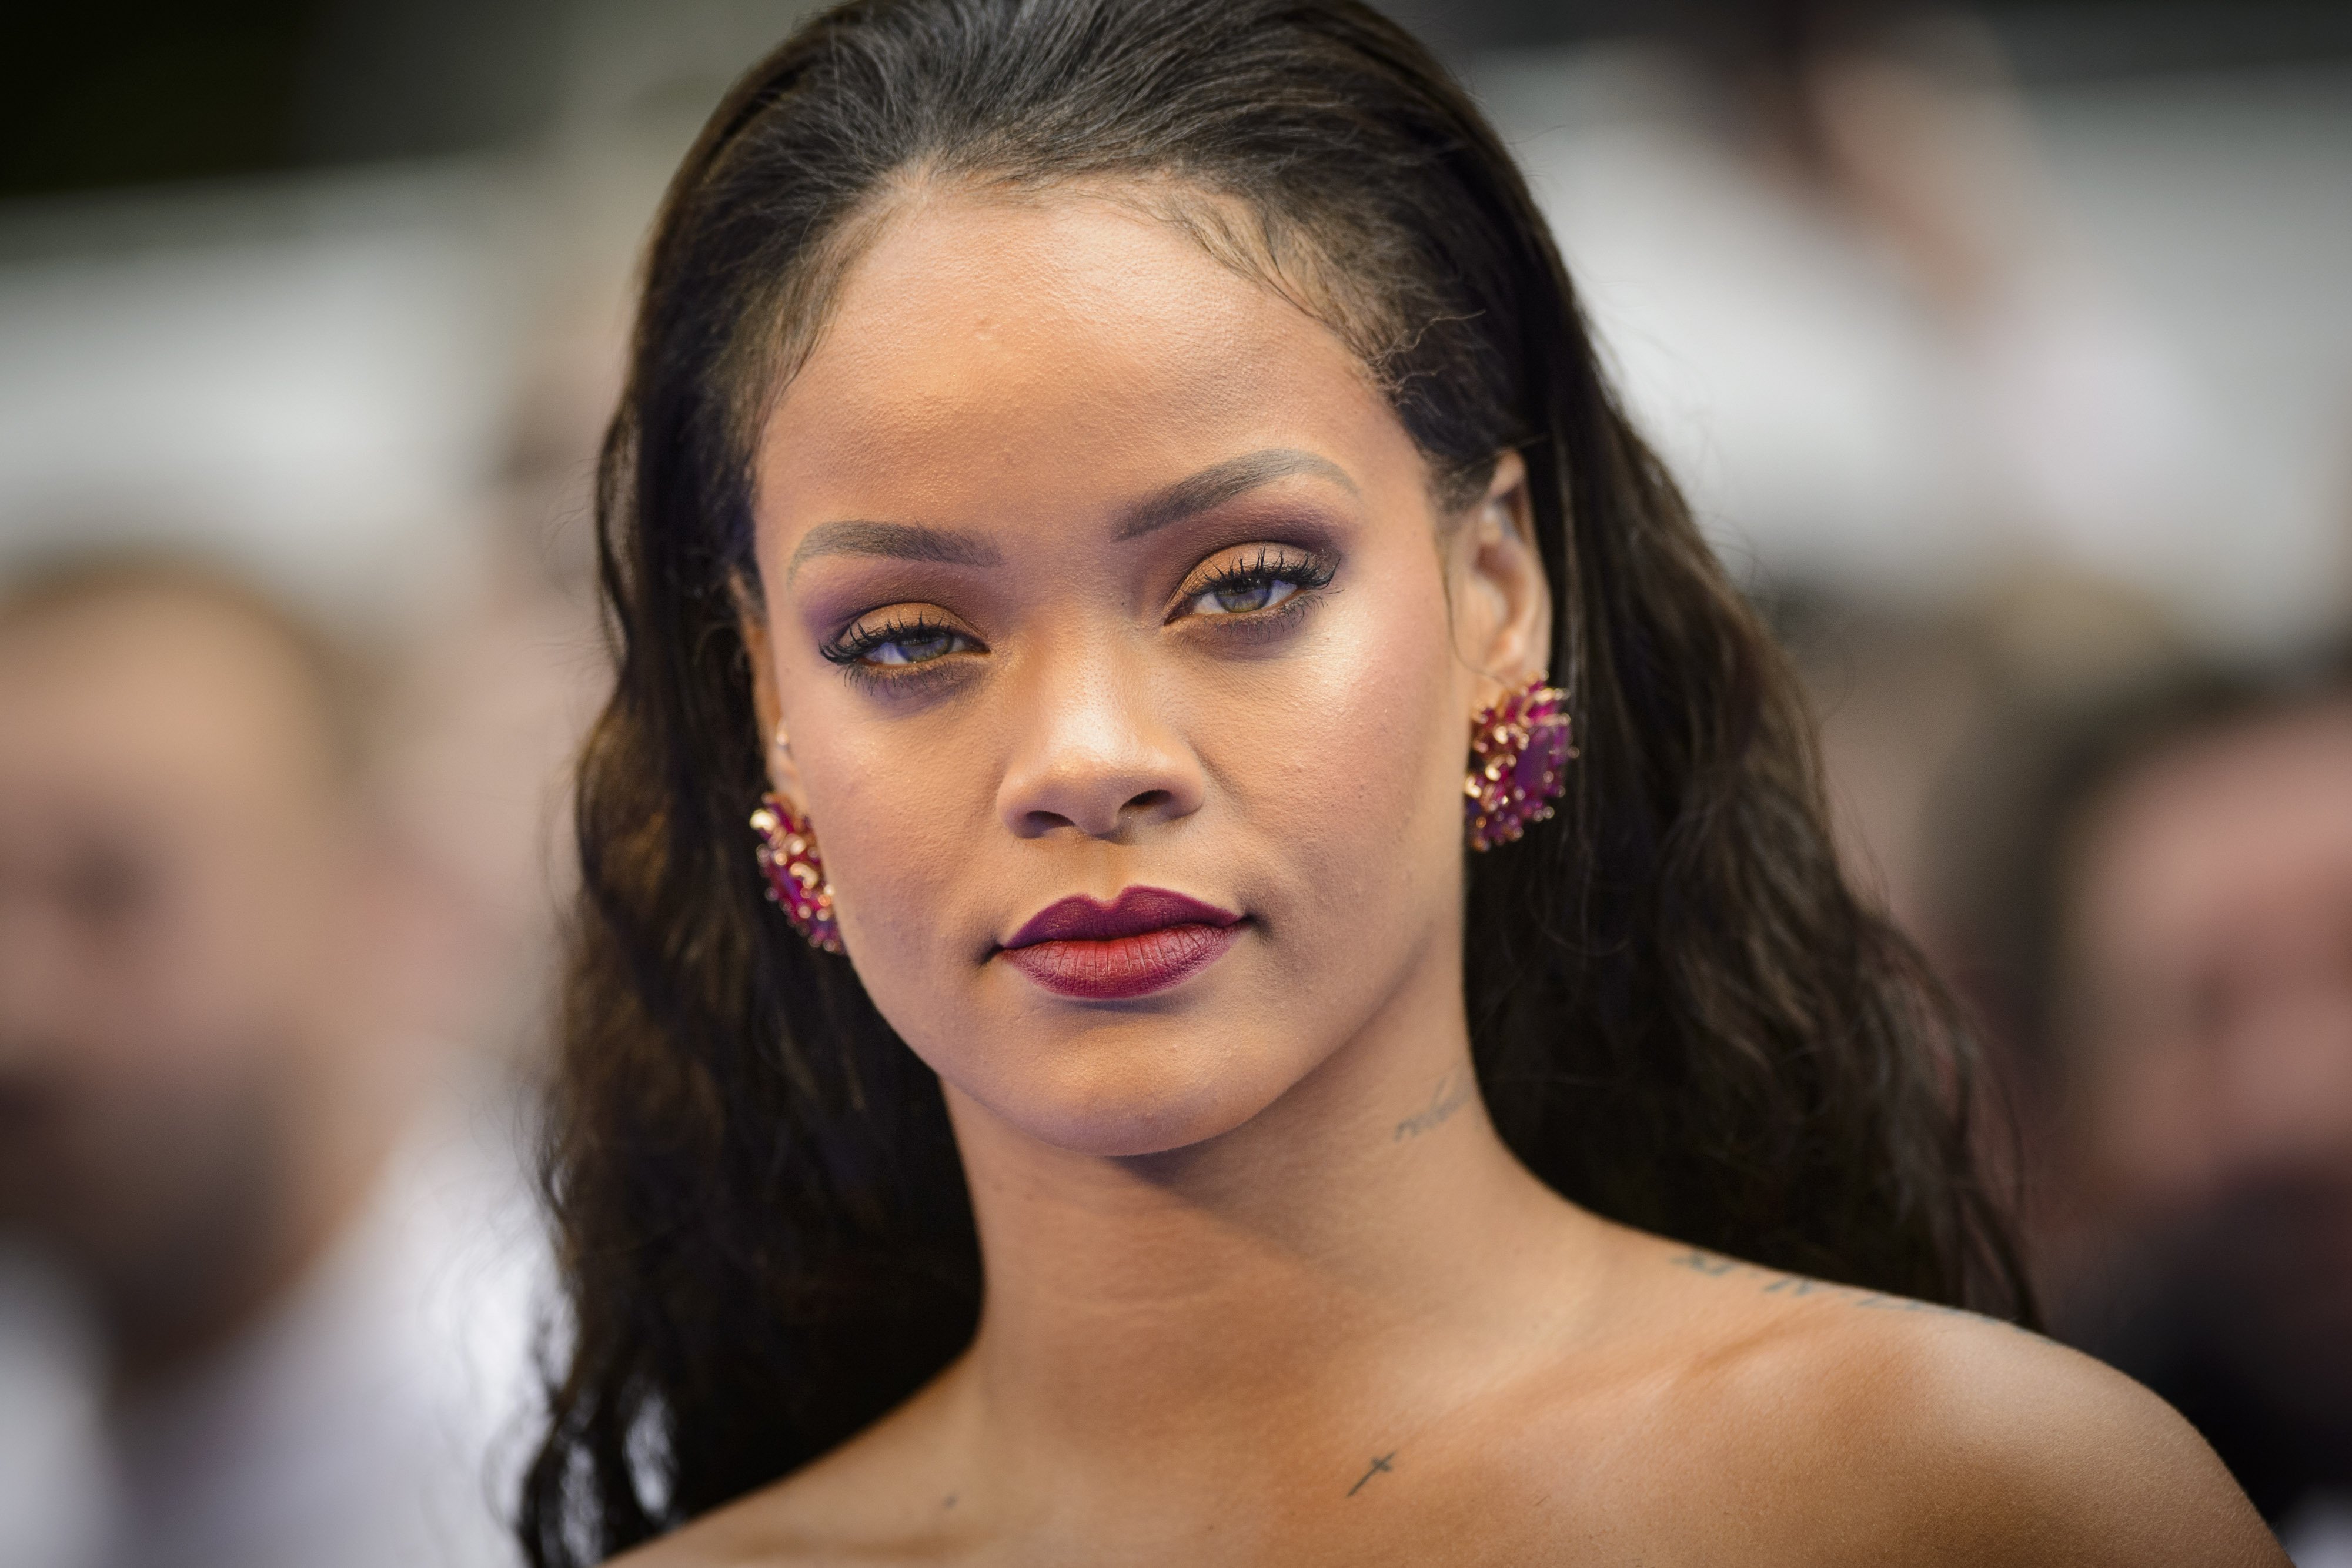 La impactant foto inèdita de Rihanna abans de ser famosa: "Sembla una altra persona"